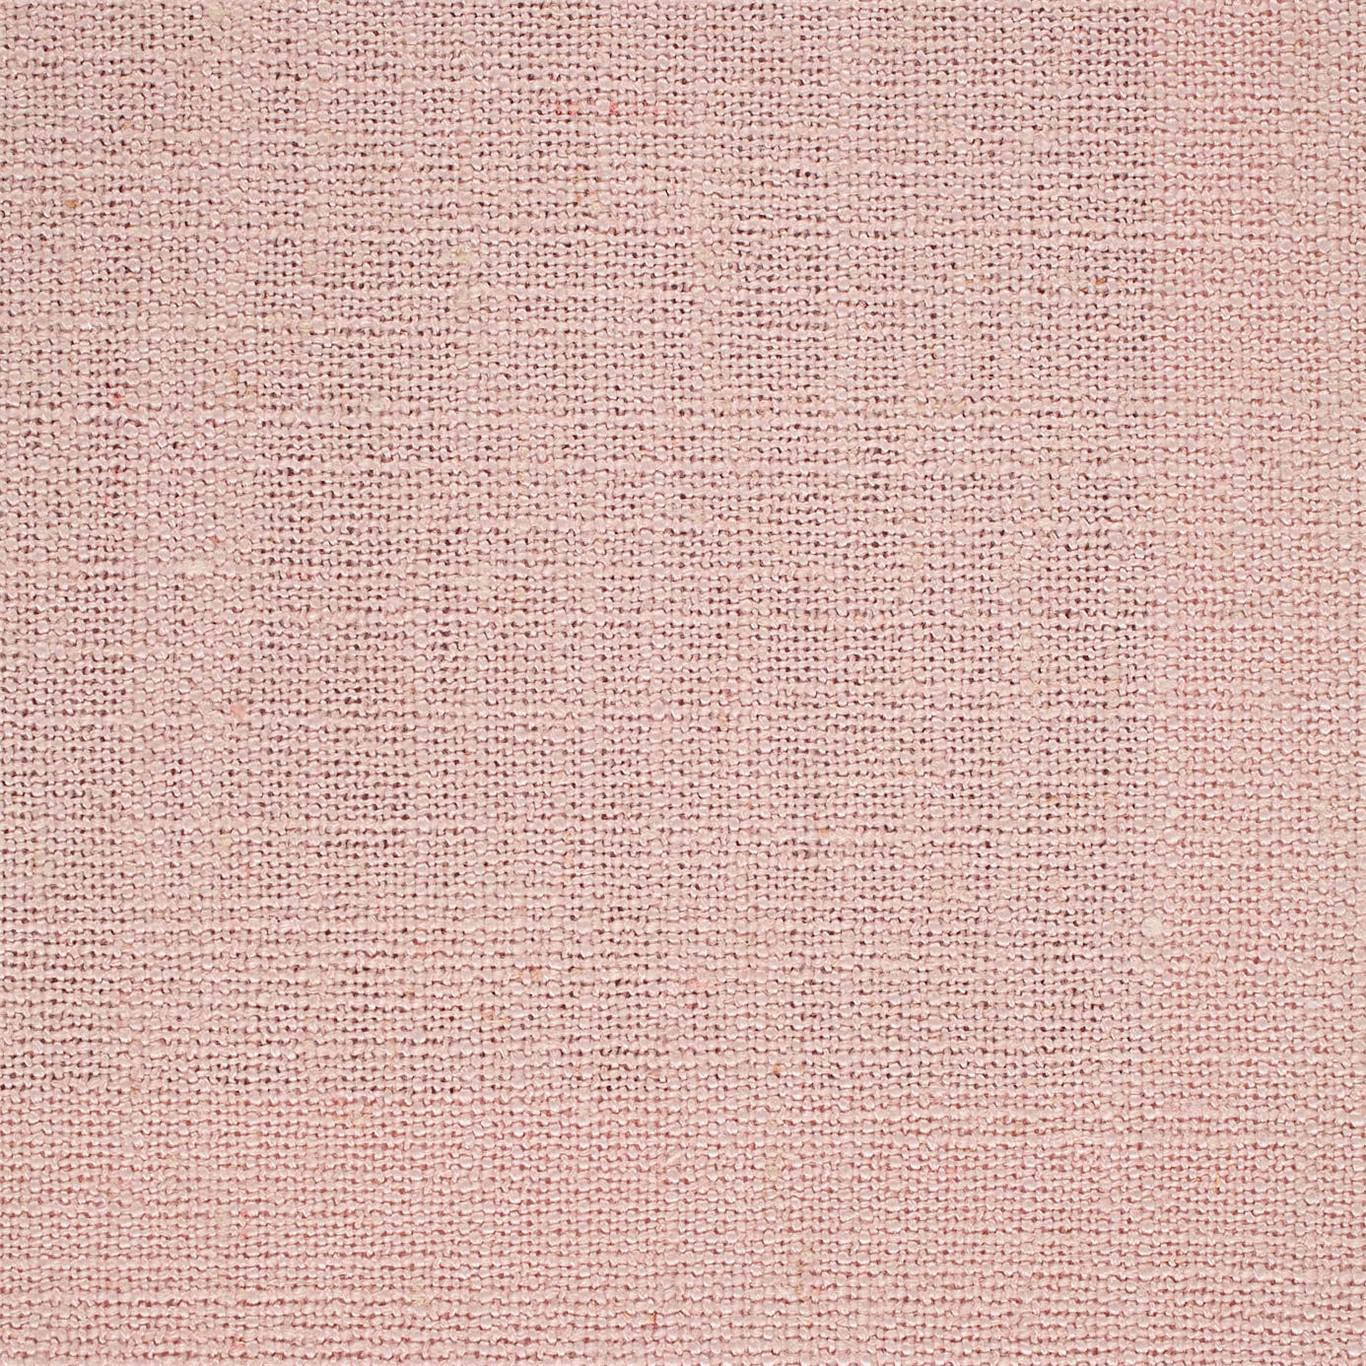 Lagom Powder Fabric by SAN